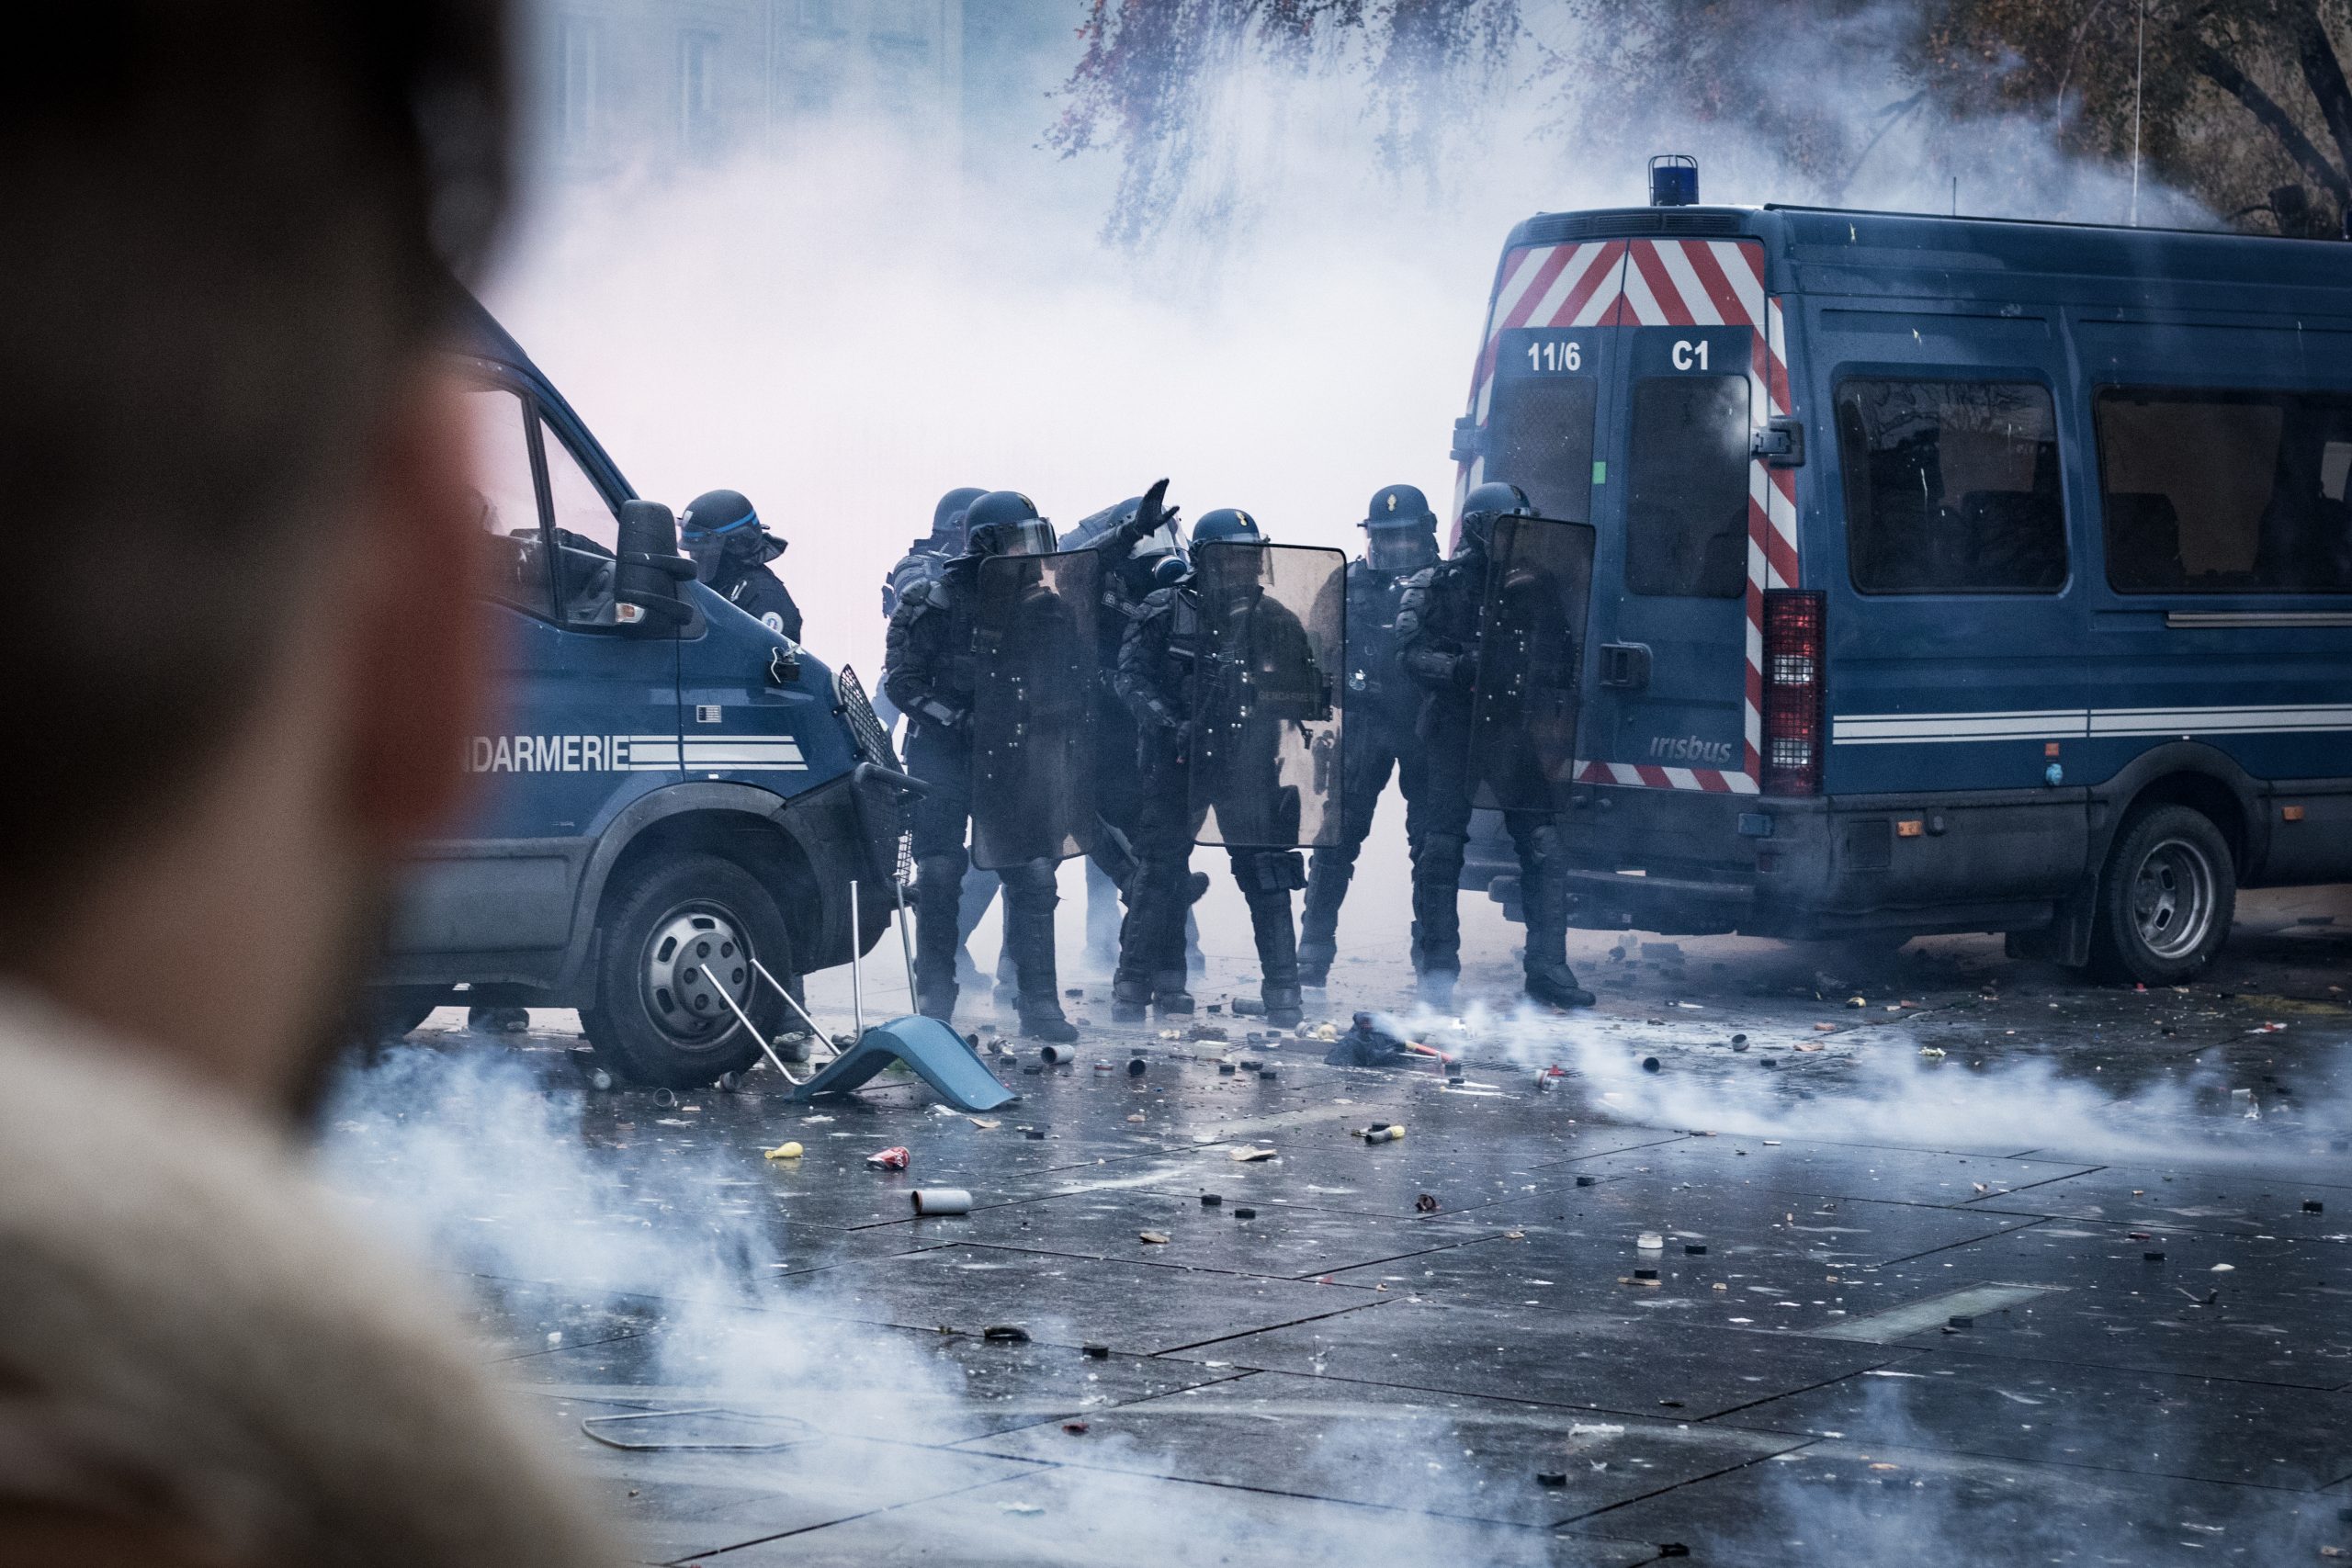 Gendarmerie dans les gazs lacrymogènes au cours de la manifestation des gilets jaunes à Bordeaux